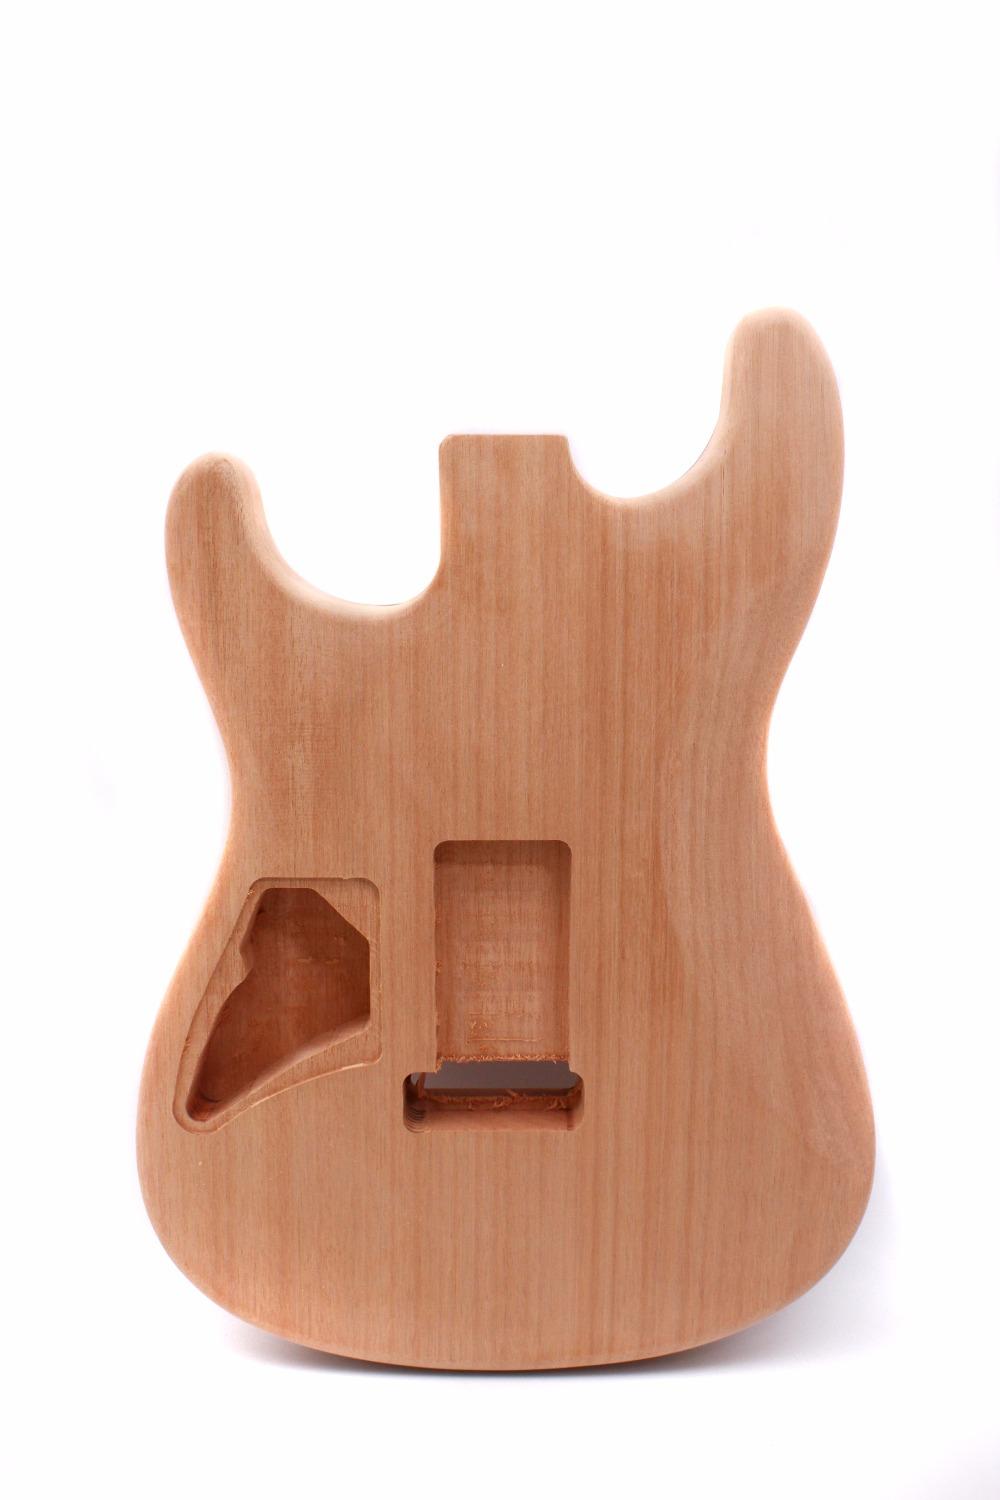 Изображение товара: Необработанный корпус гитары HH, необработанный цельный, из красного дерева, для самостоятельной сборки электрогитары